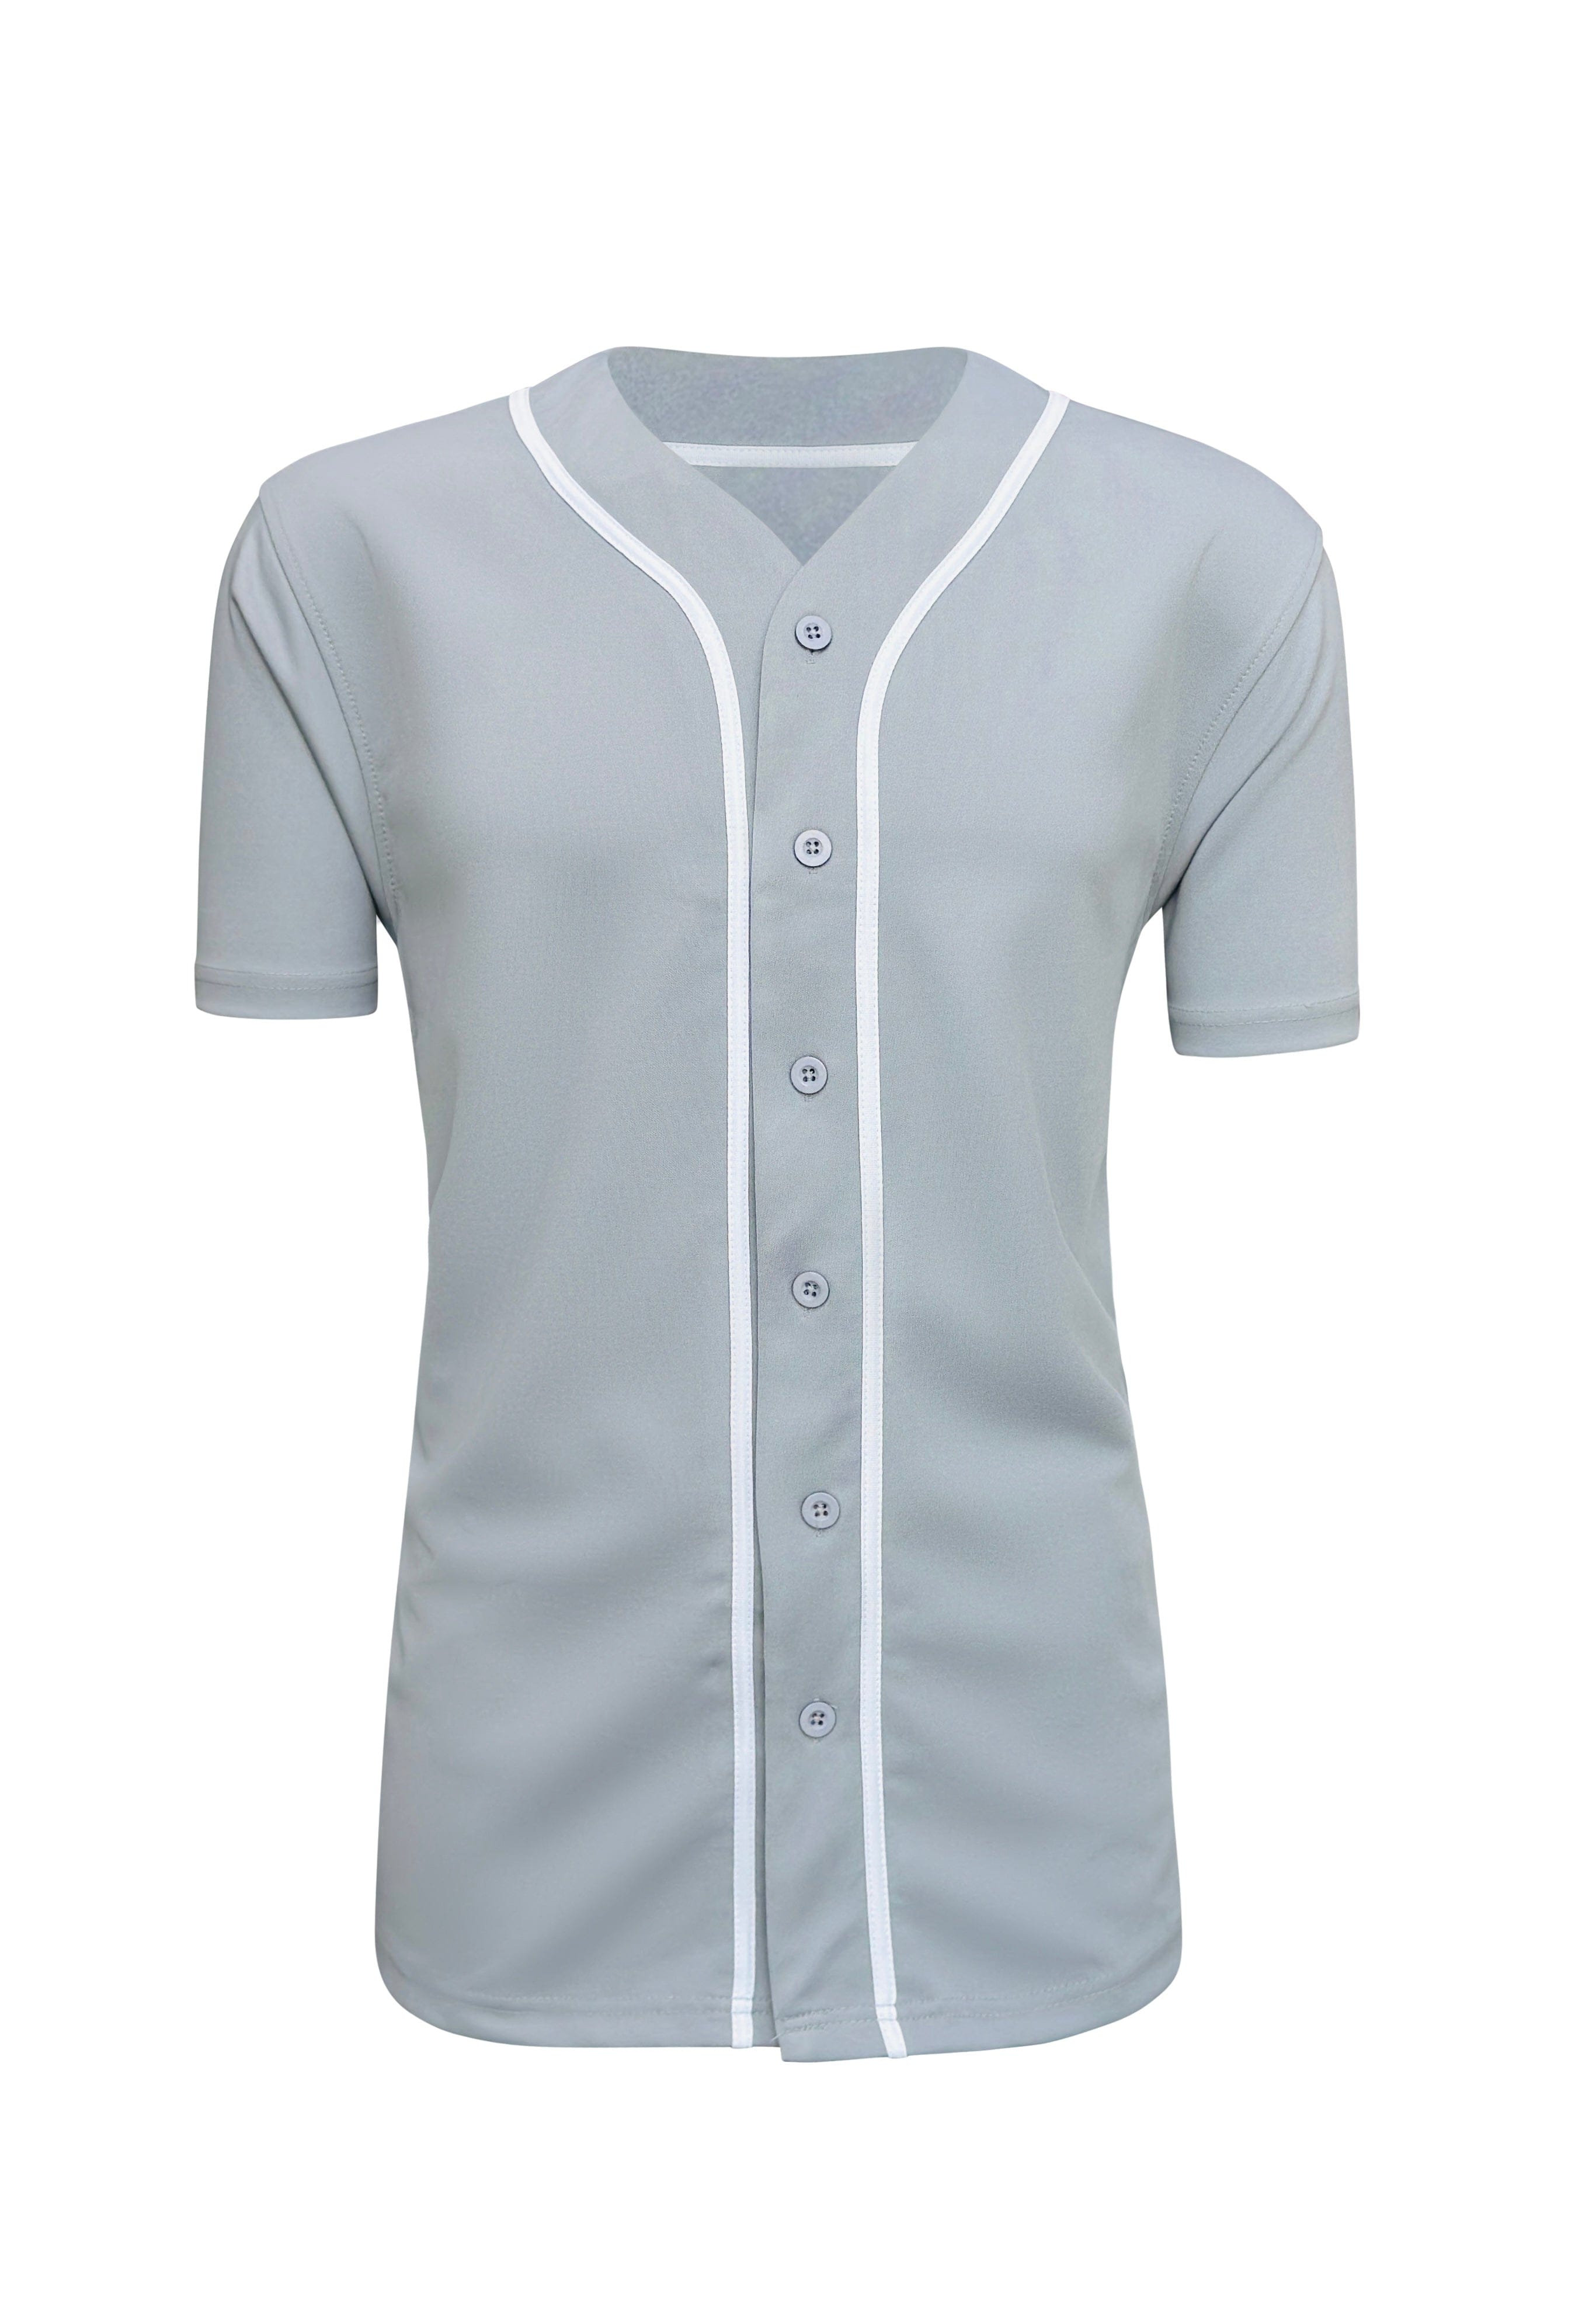 Wholesale White Black-Piping Sublimation Unisex Baseball Jersey (8